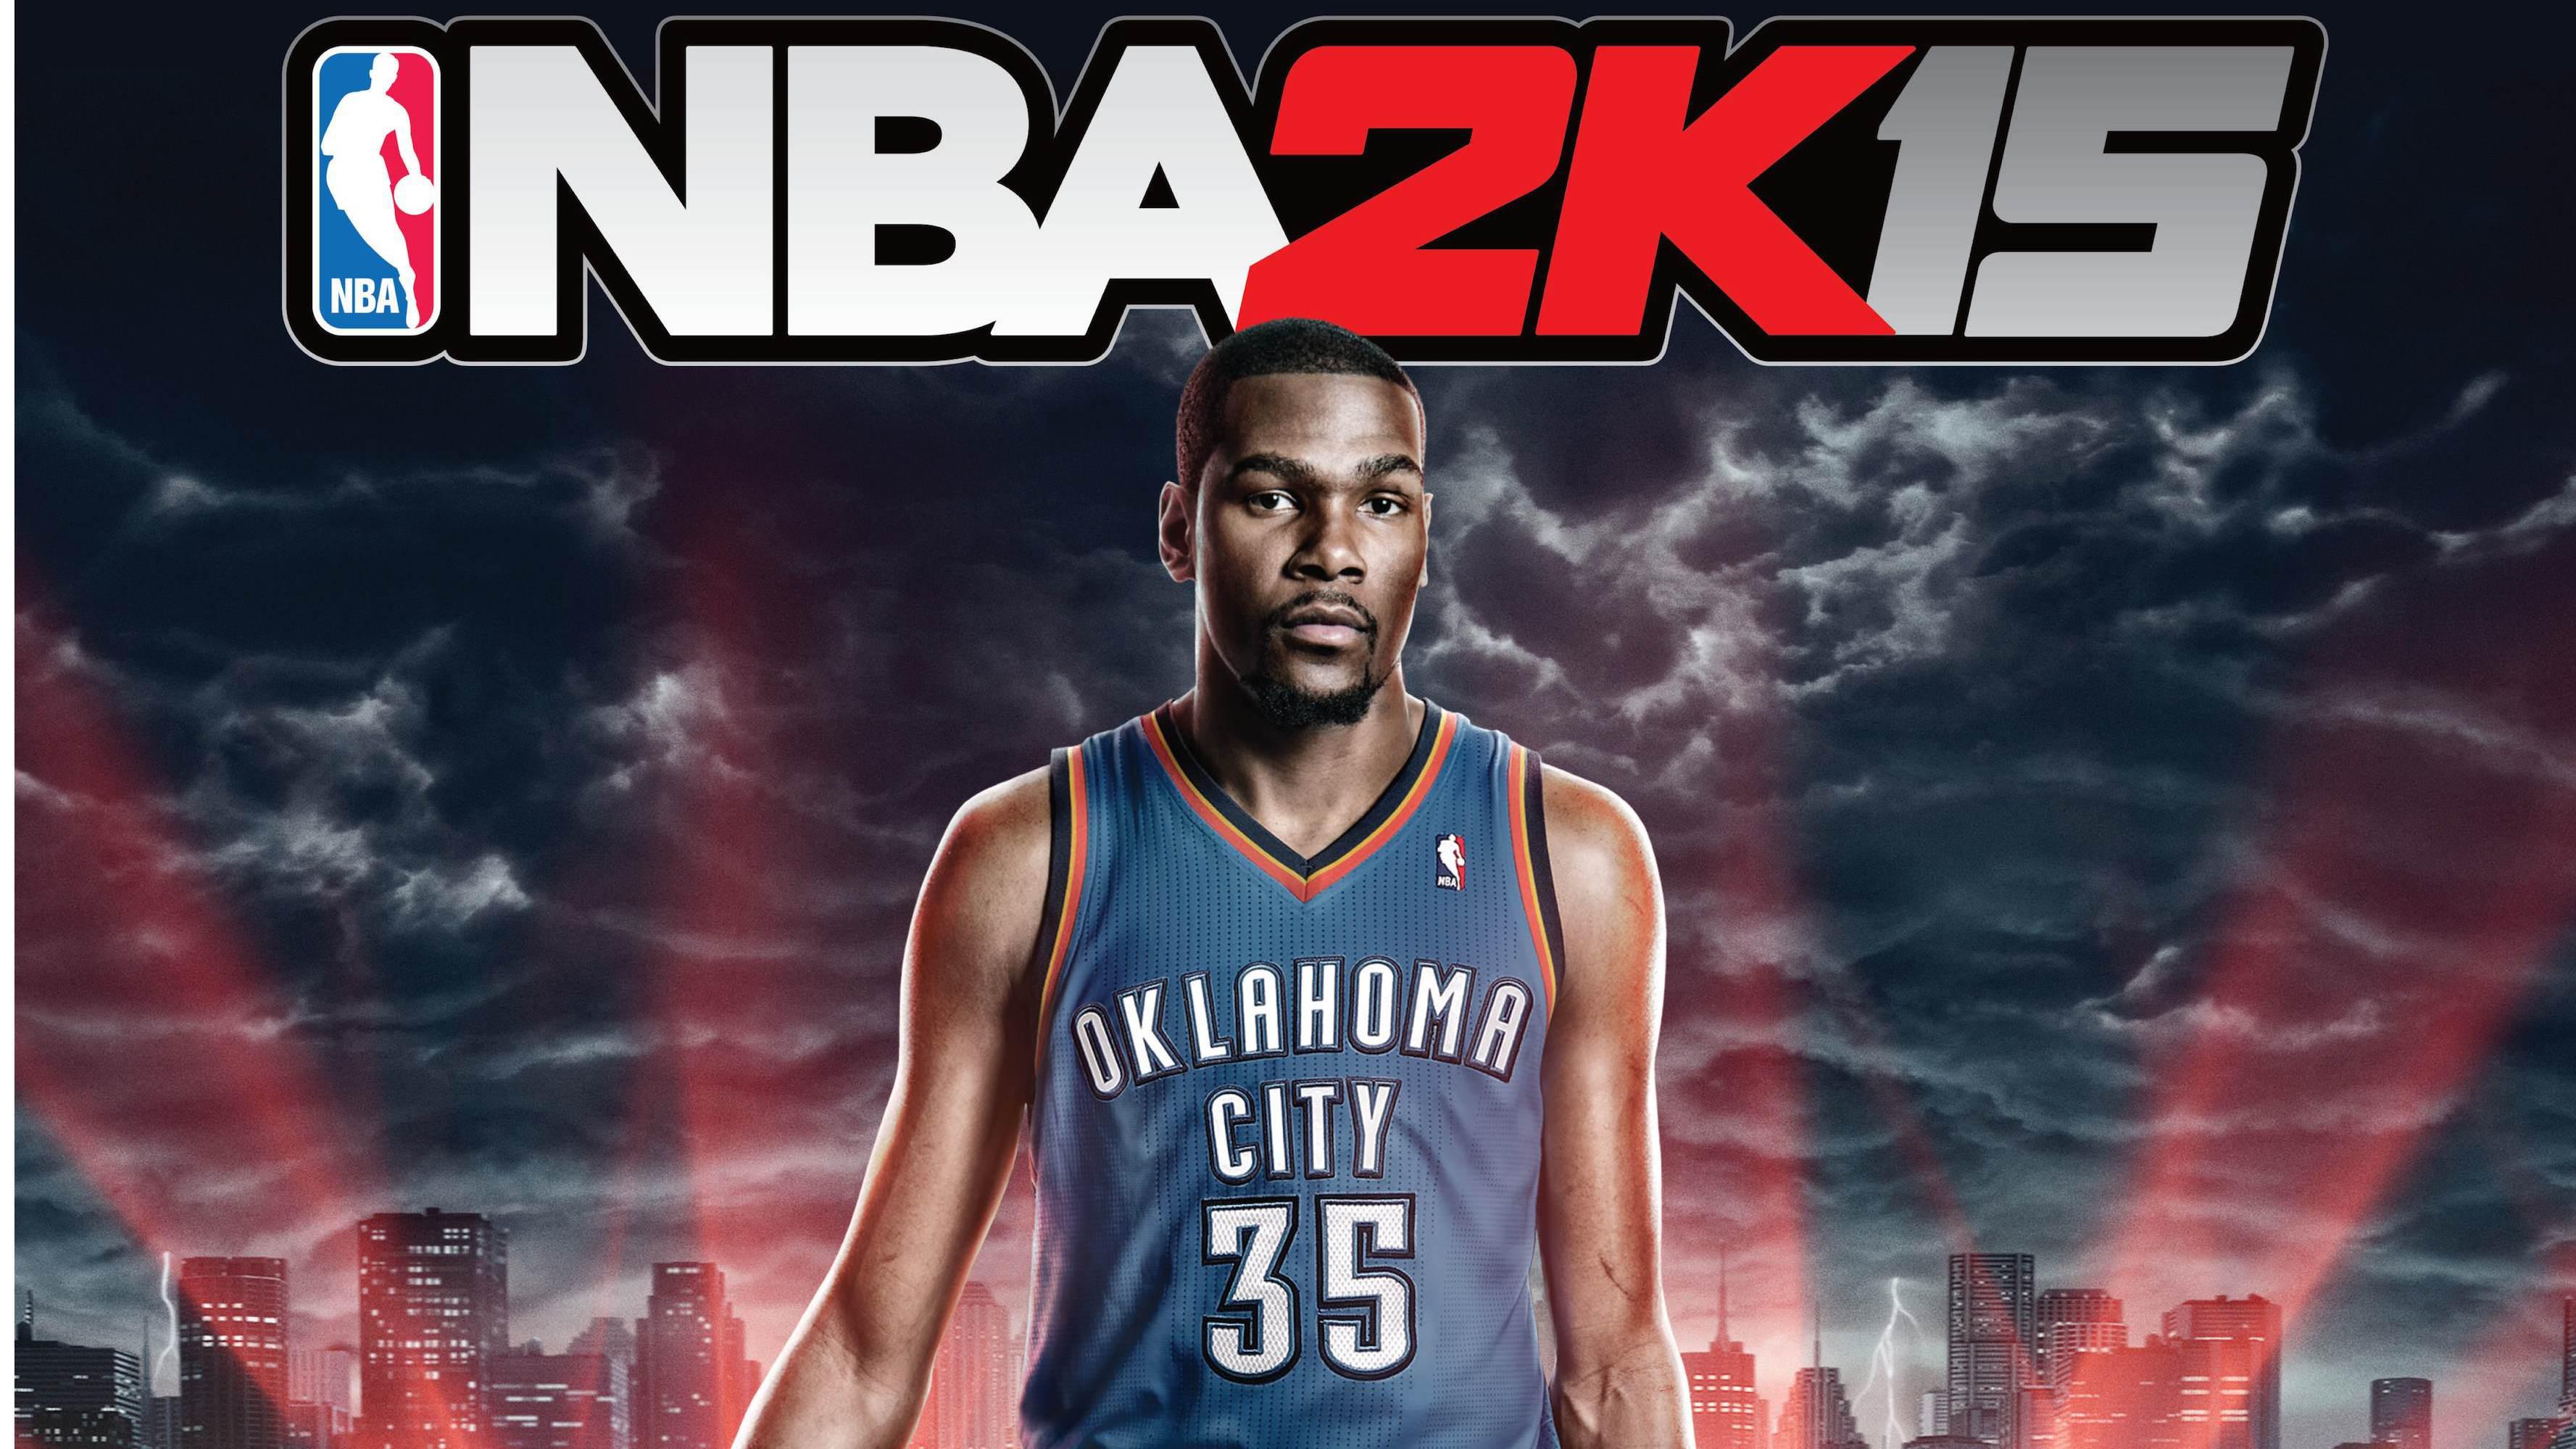 Kevin Durant NBA 2K15 wallpaper,games HD wallpaper,2015 HD